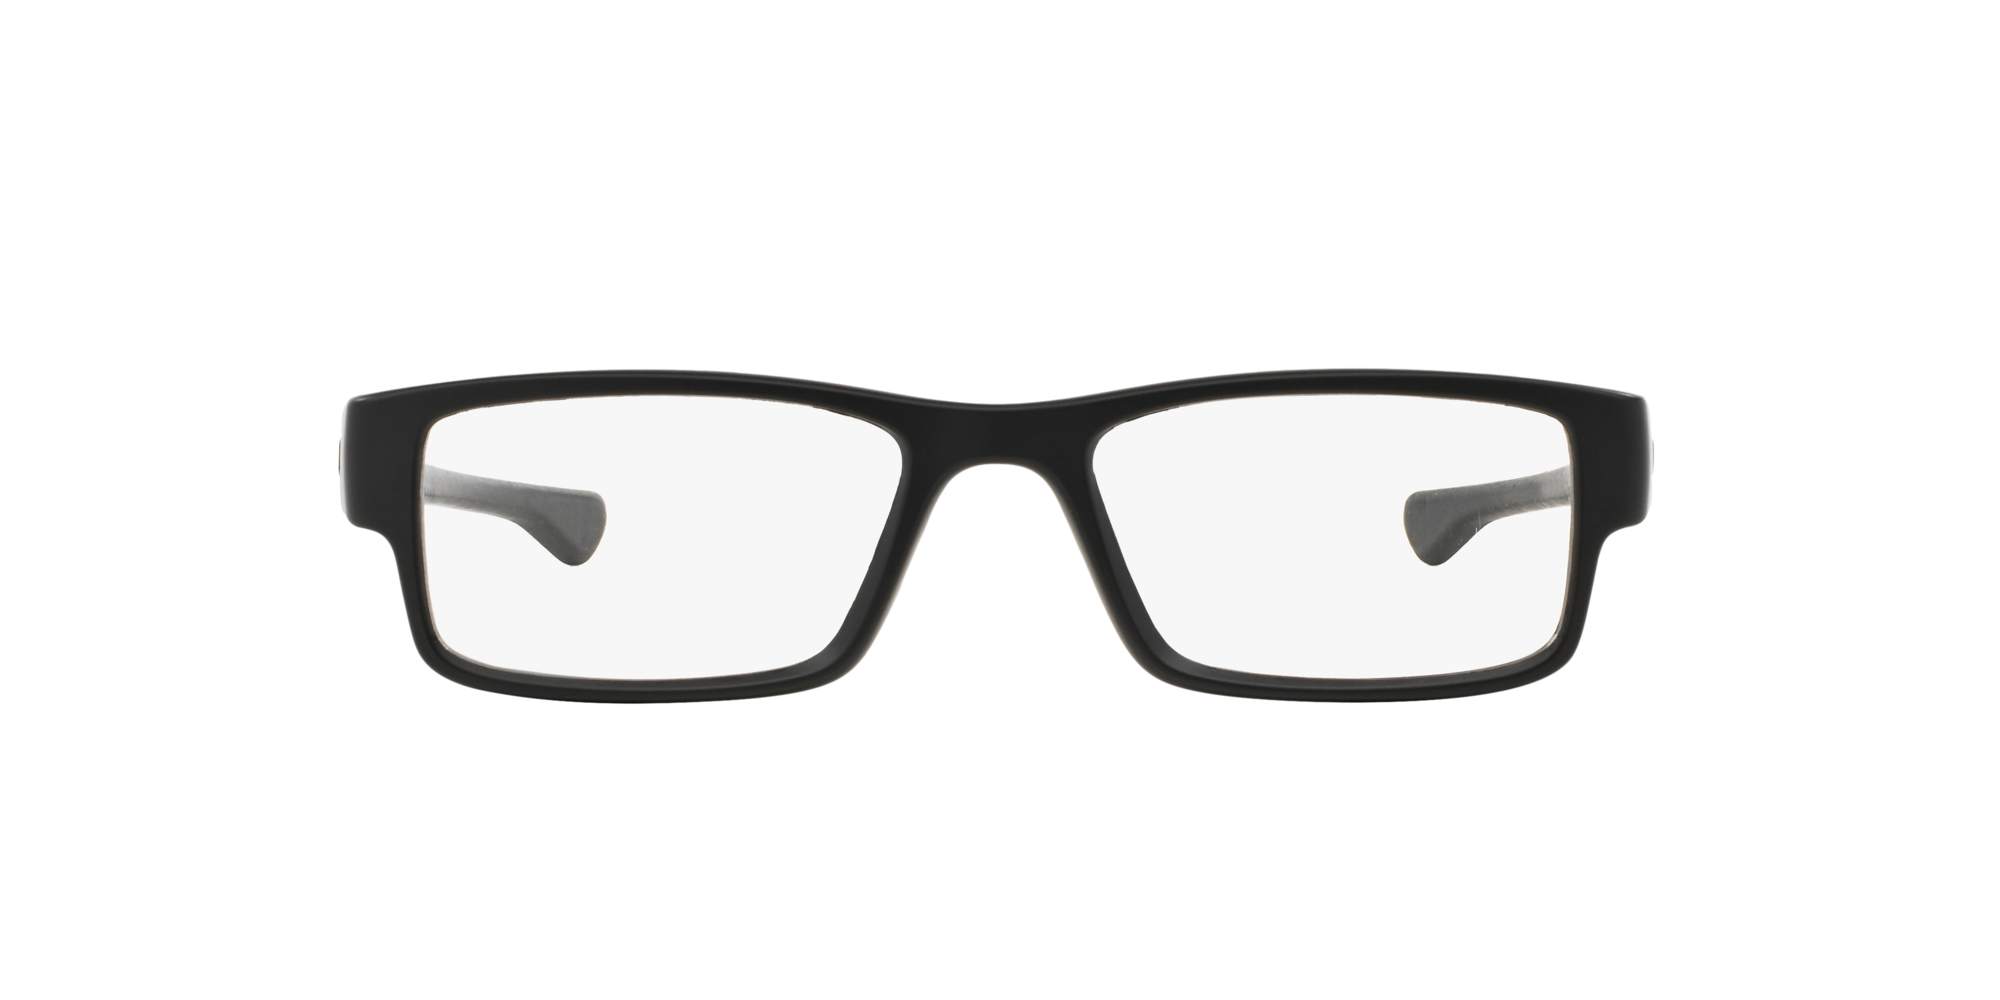 lenscrafters oakley sunglasses